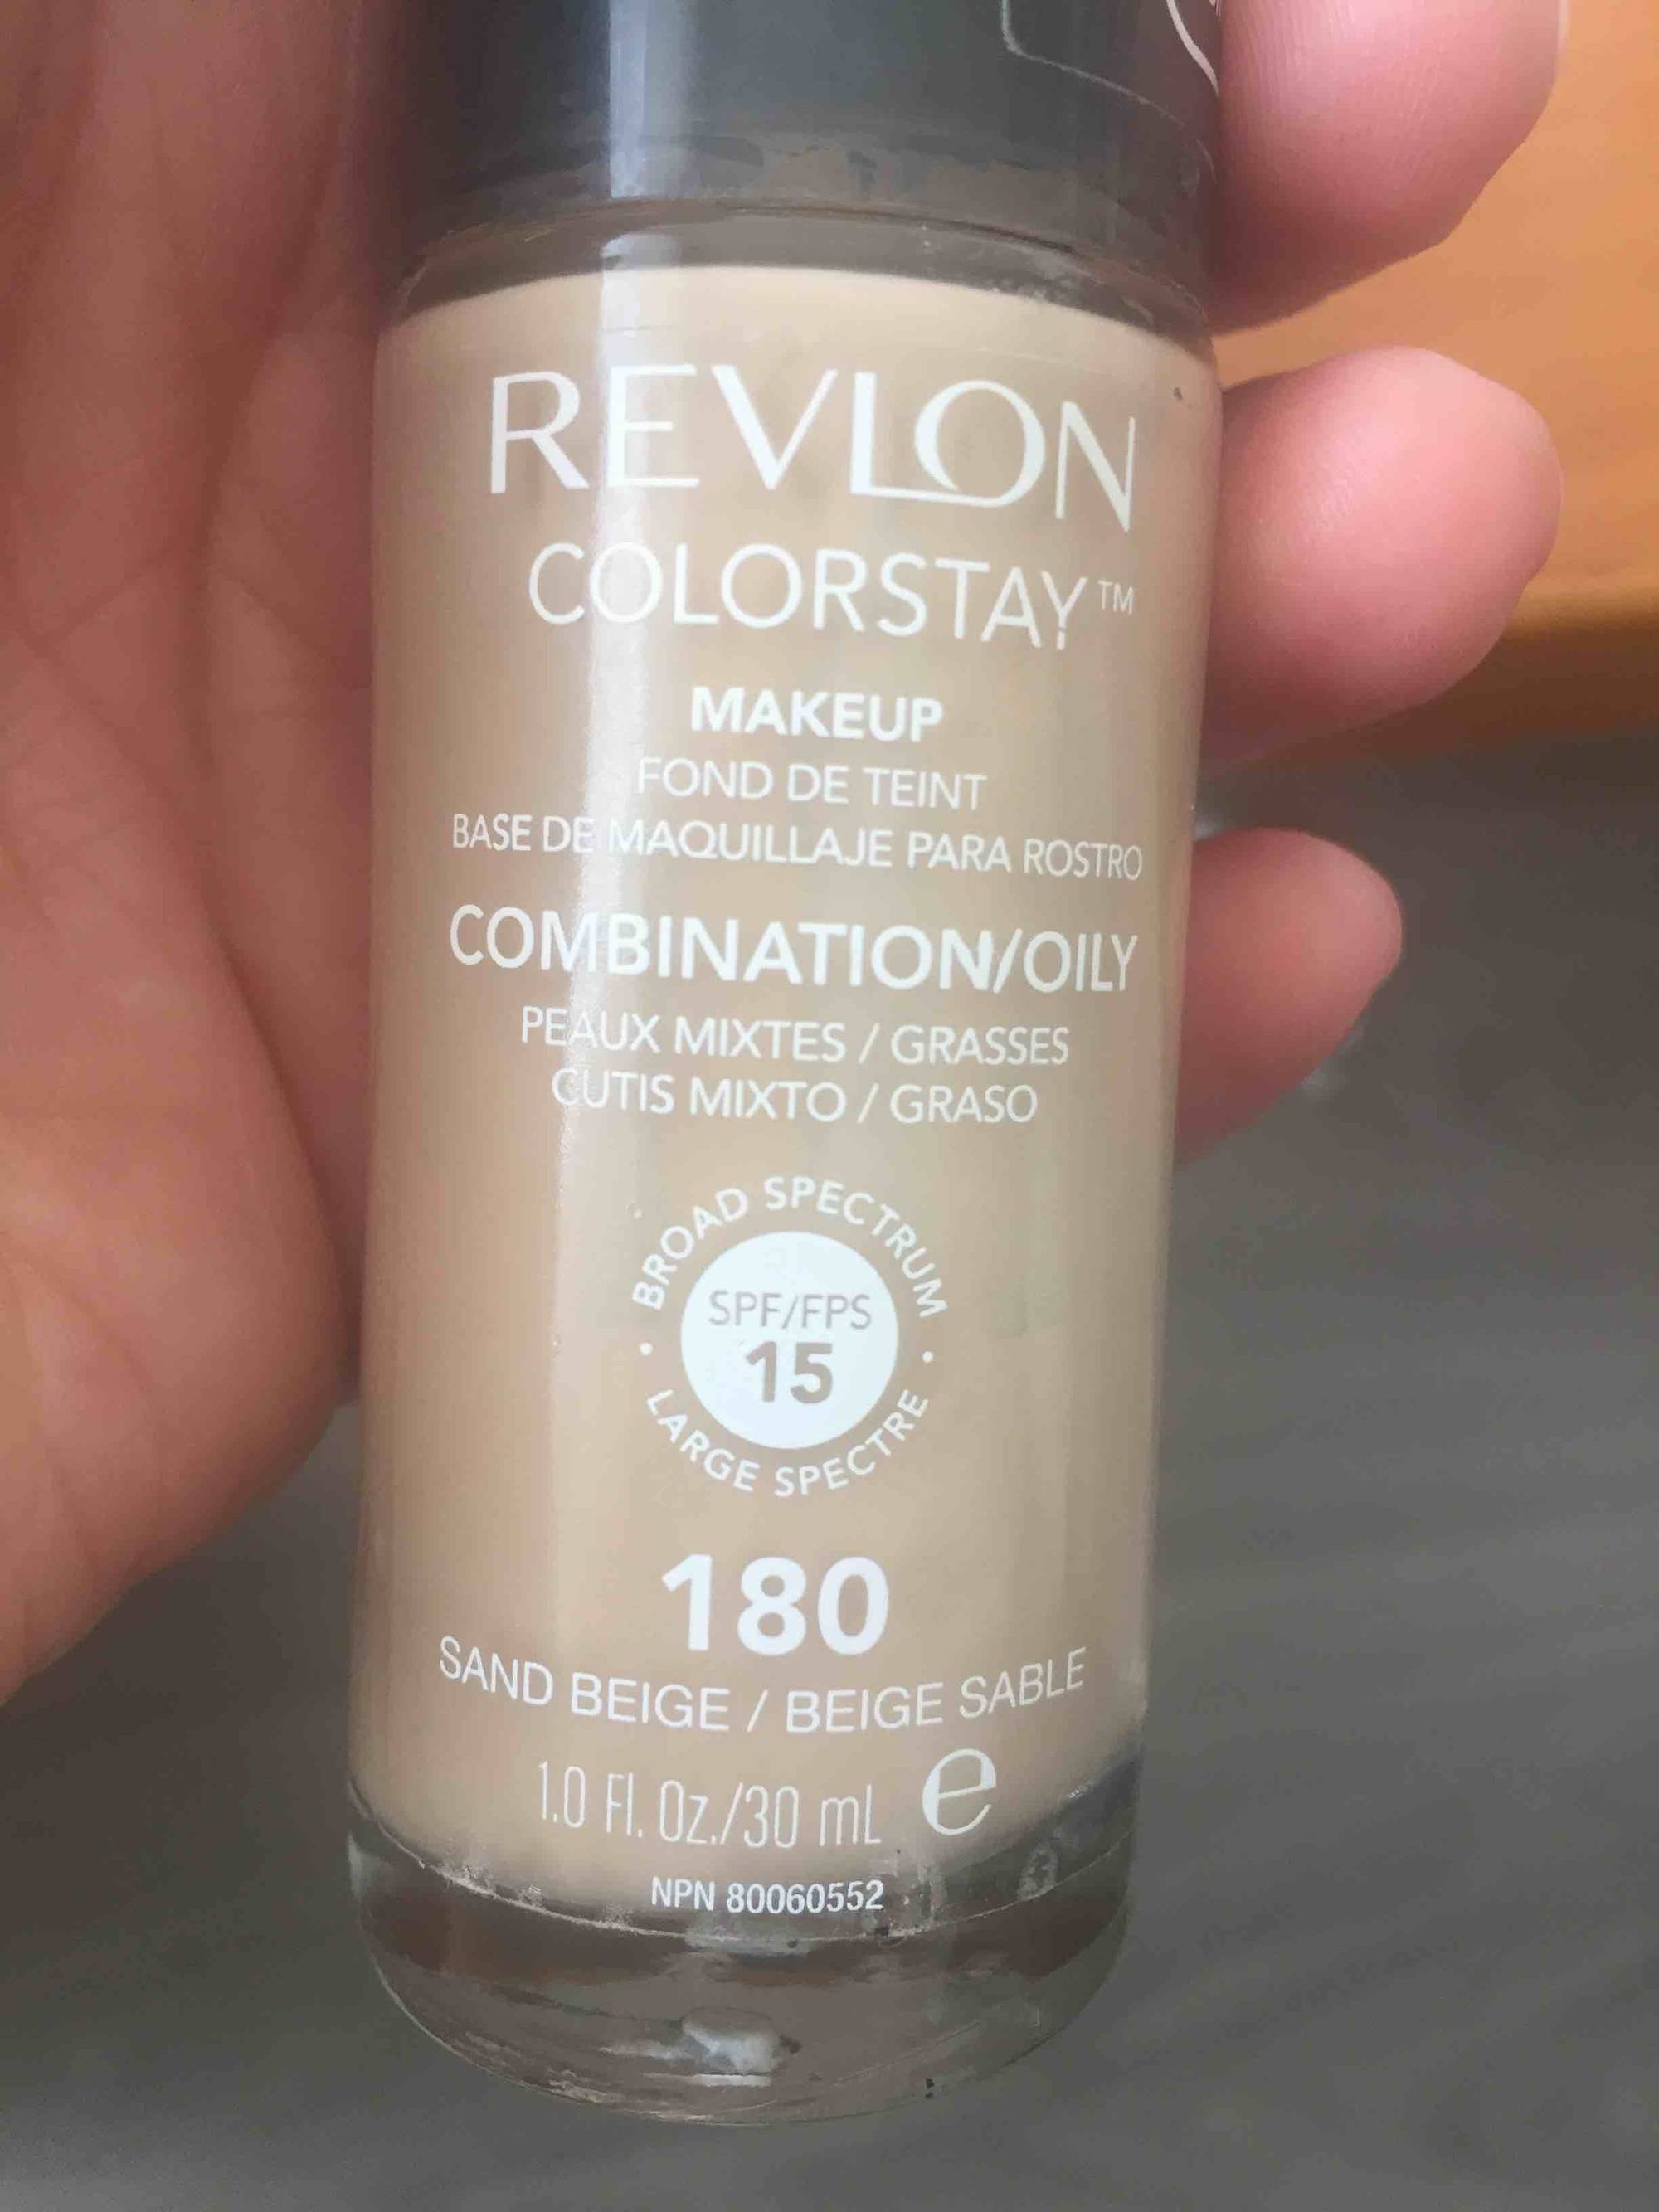 REVLON - Colorstay makeup - Fond de teint 180 beige sable